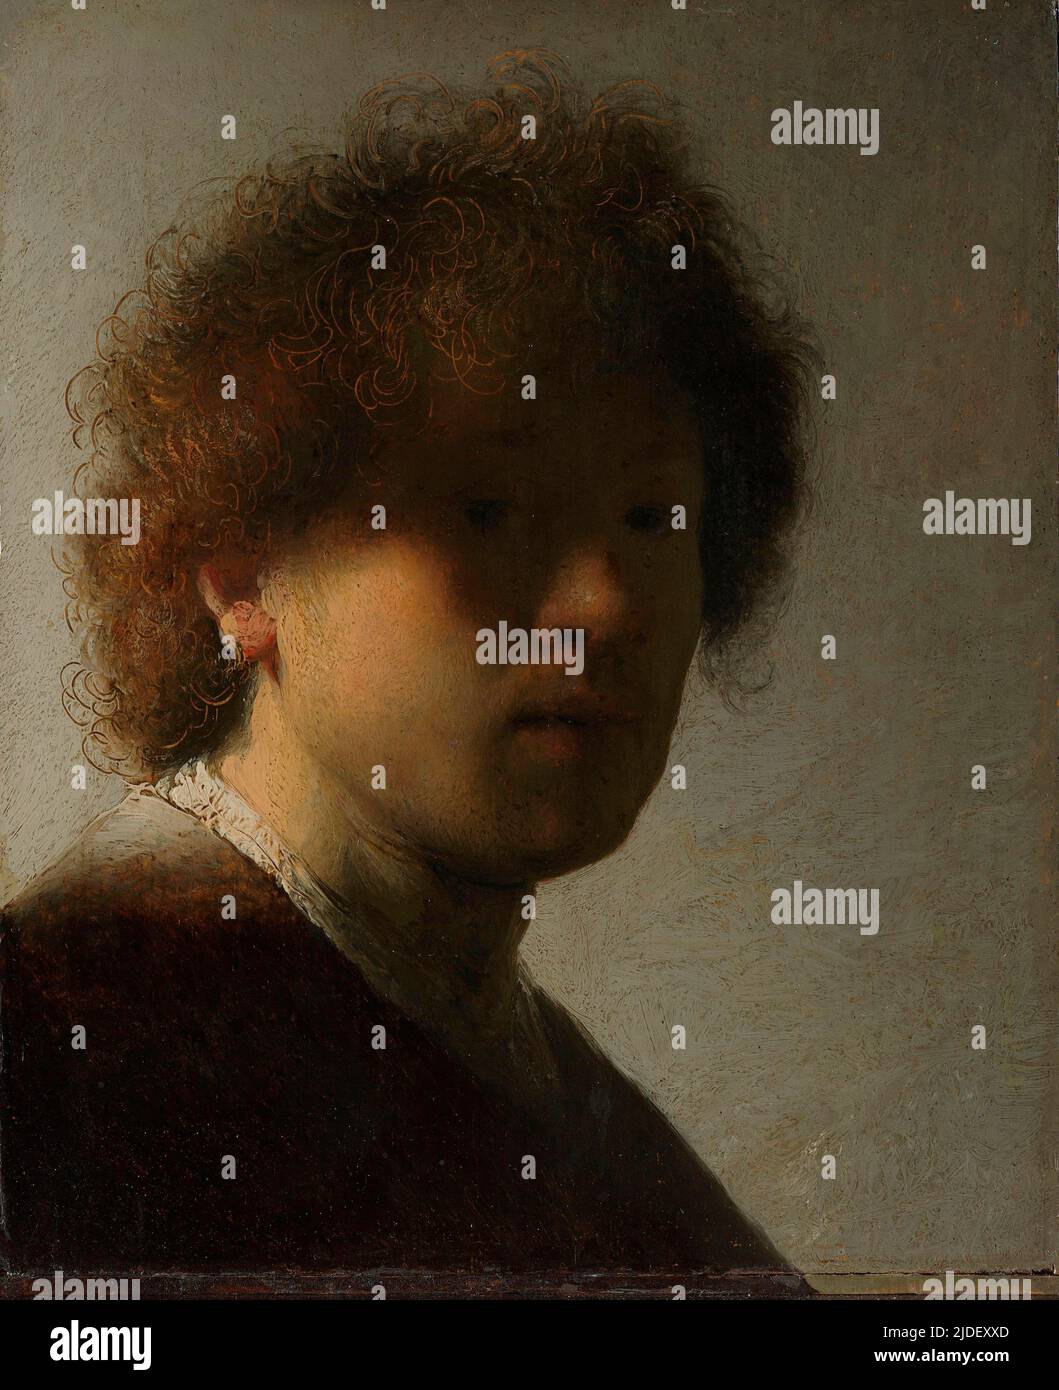 Self-portrait, Rembrandt van Rijn, c. 1628 Stock Photo